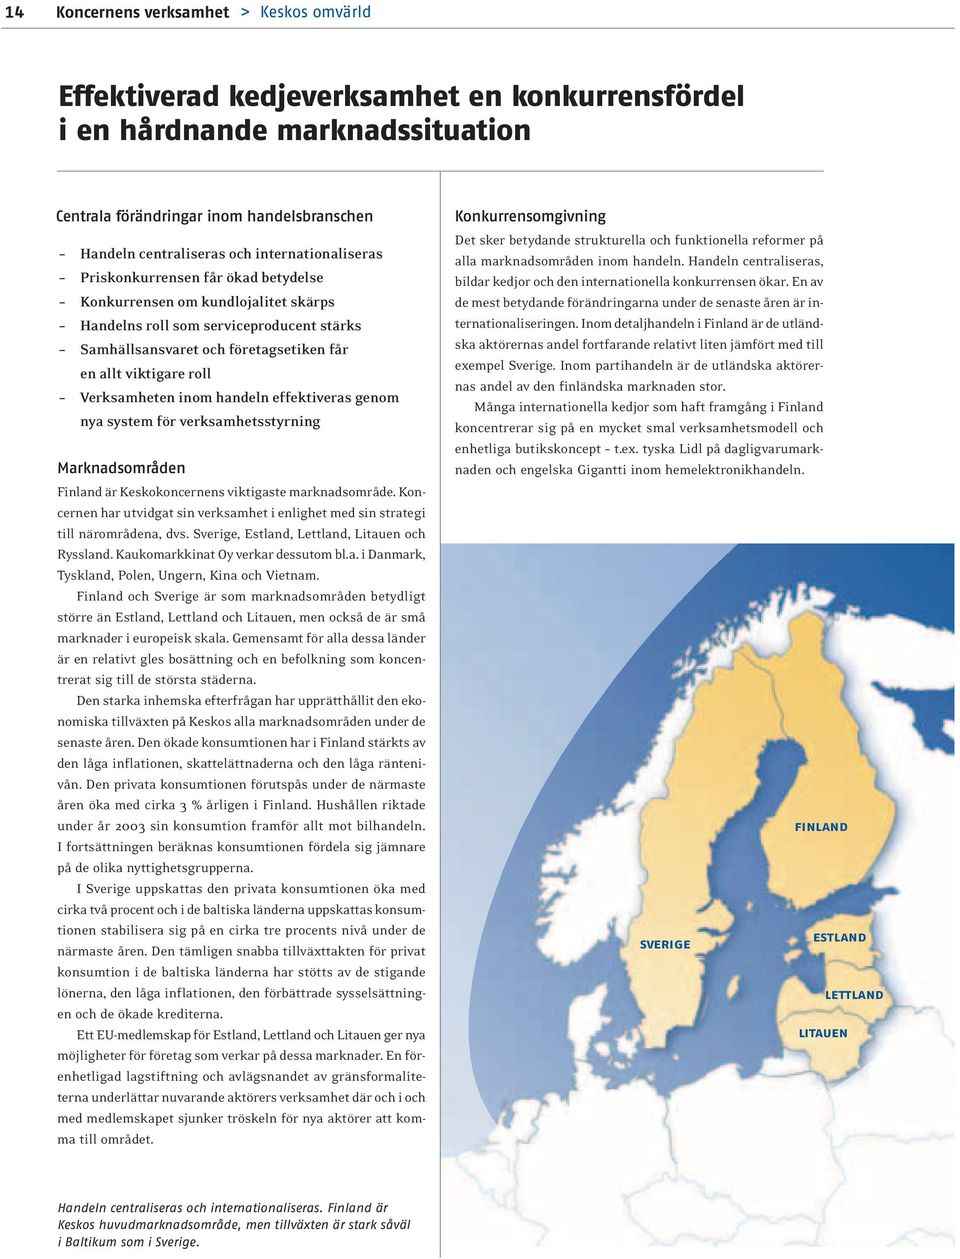 Verksamheten inom handeln effektiveras genom nya system för verksamhetsstyrning Marknadsområden Finland är Keskokoncernens viktigaste marknadsområde.